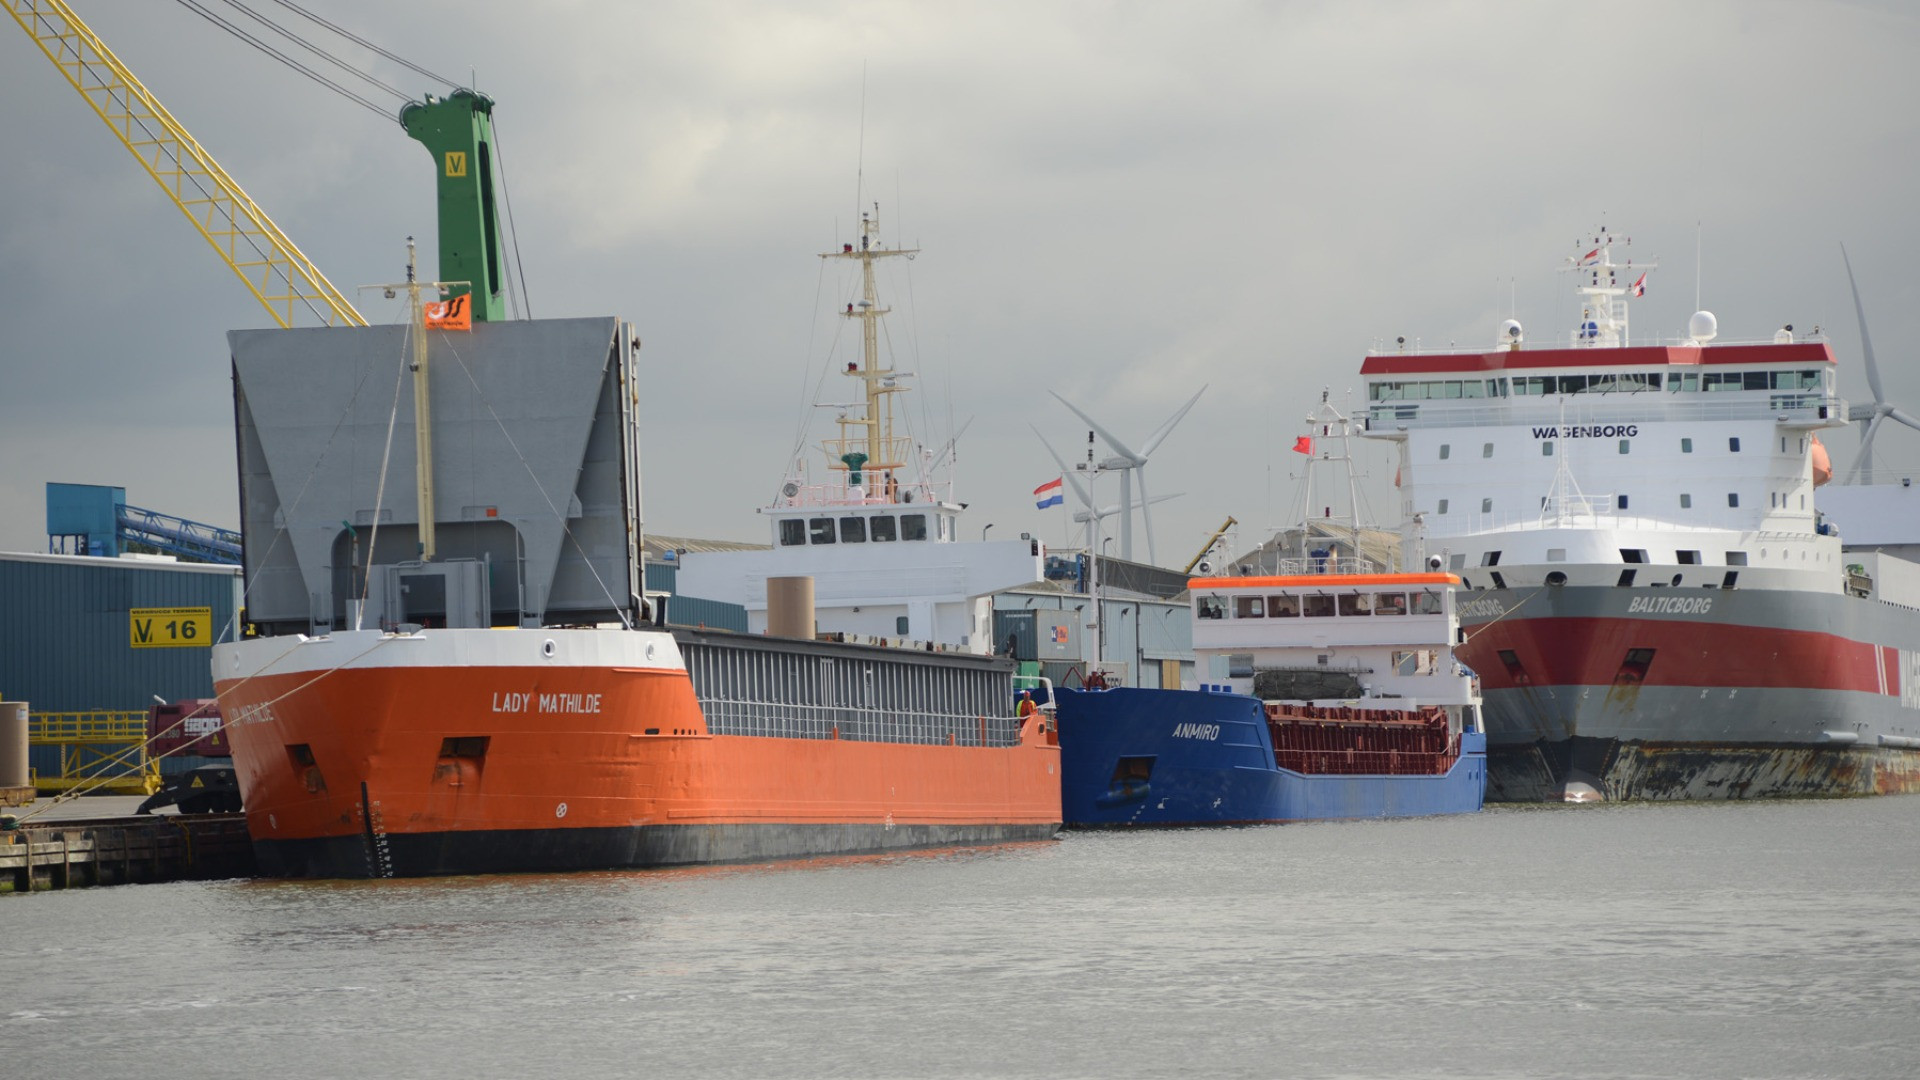 scheepvaart-kanaal-verbrugge-logistiek-wagenborg--(35)